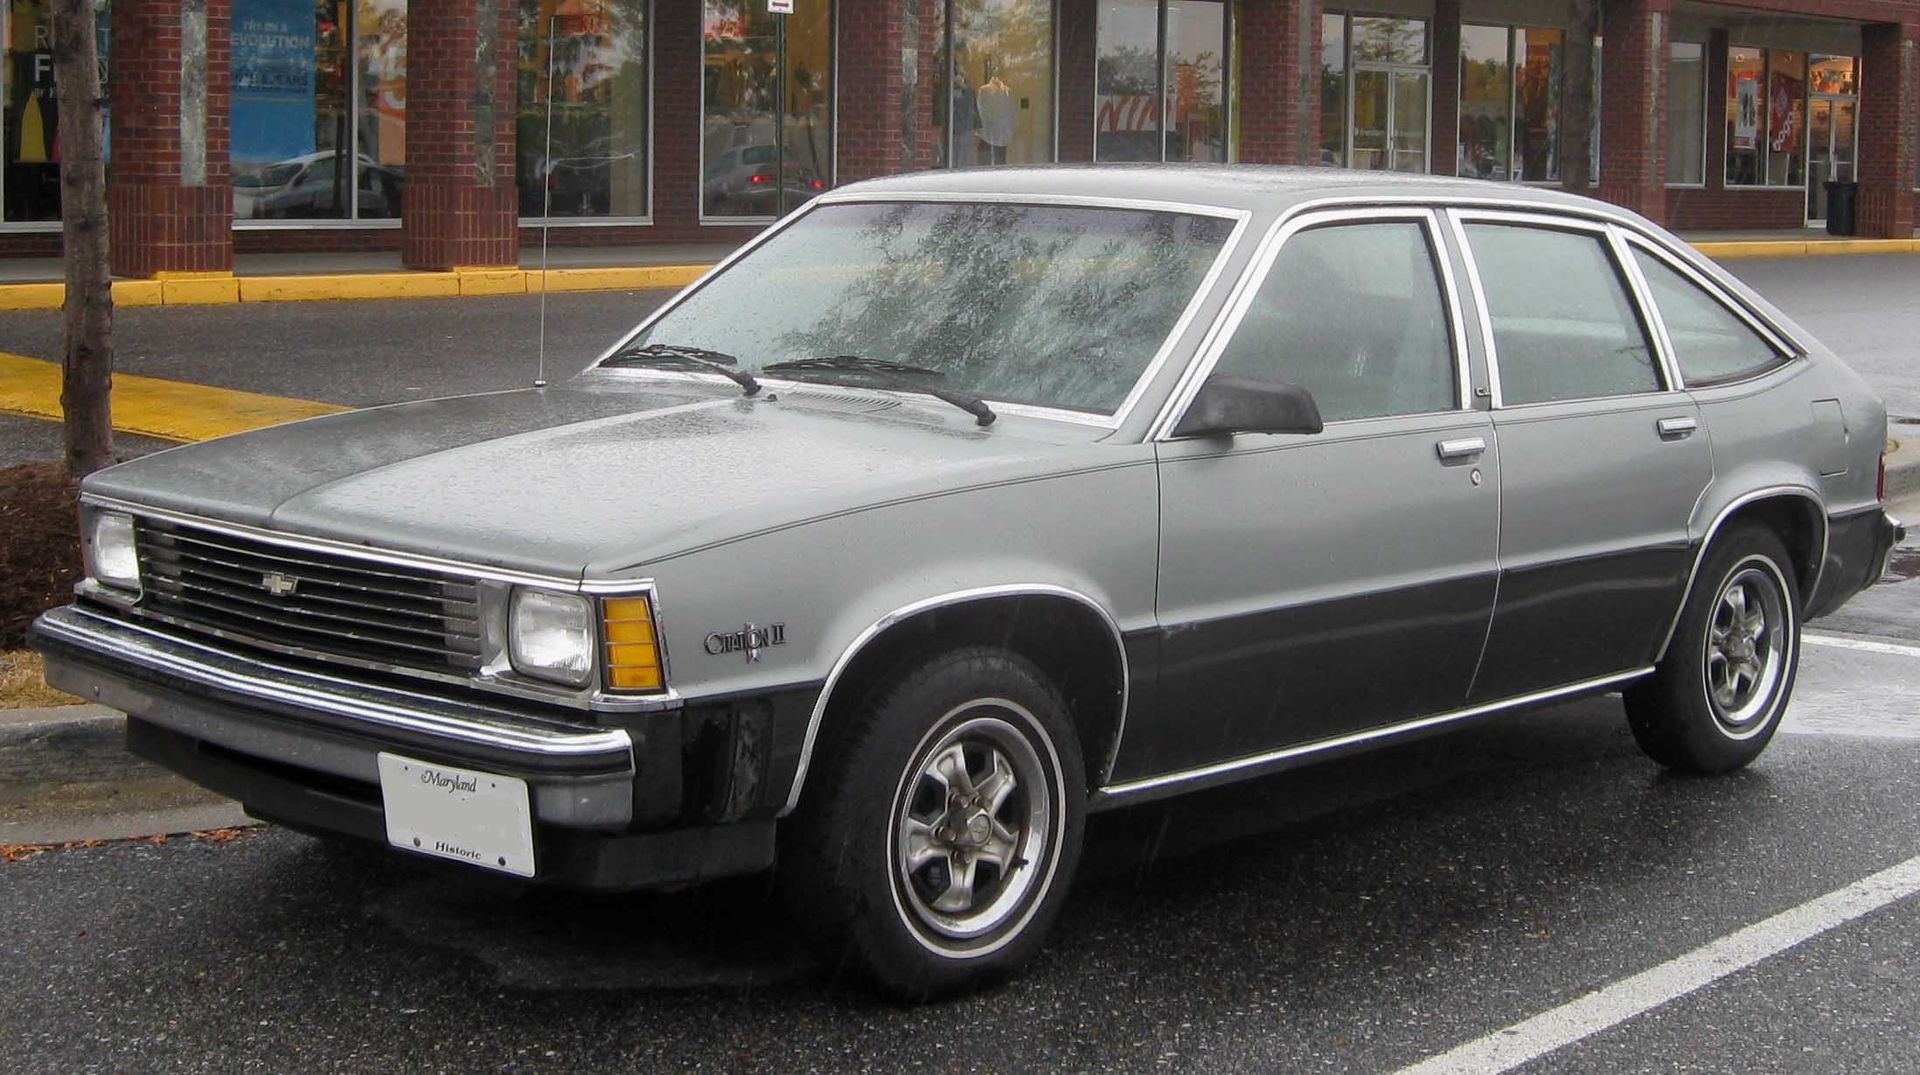 Valley Chevy Phoenix - Forgotten Chevrolets: Citation